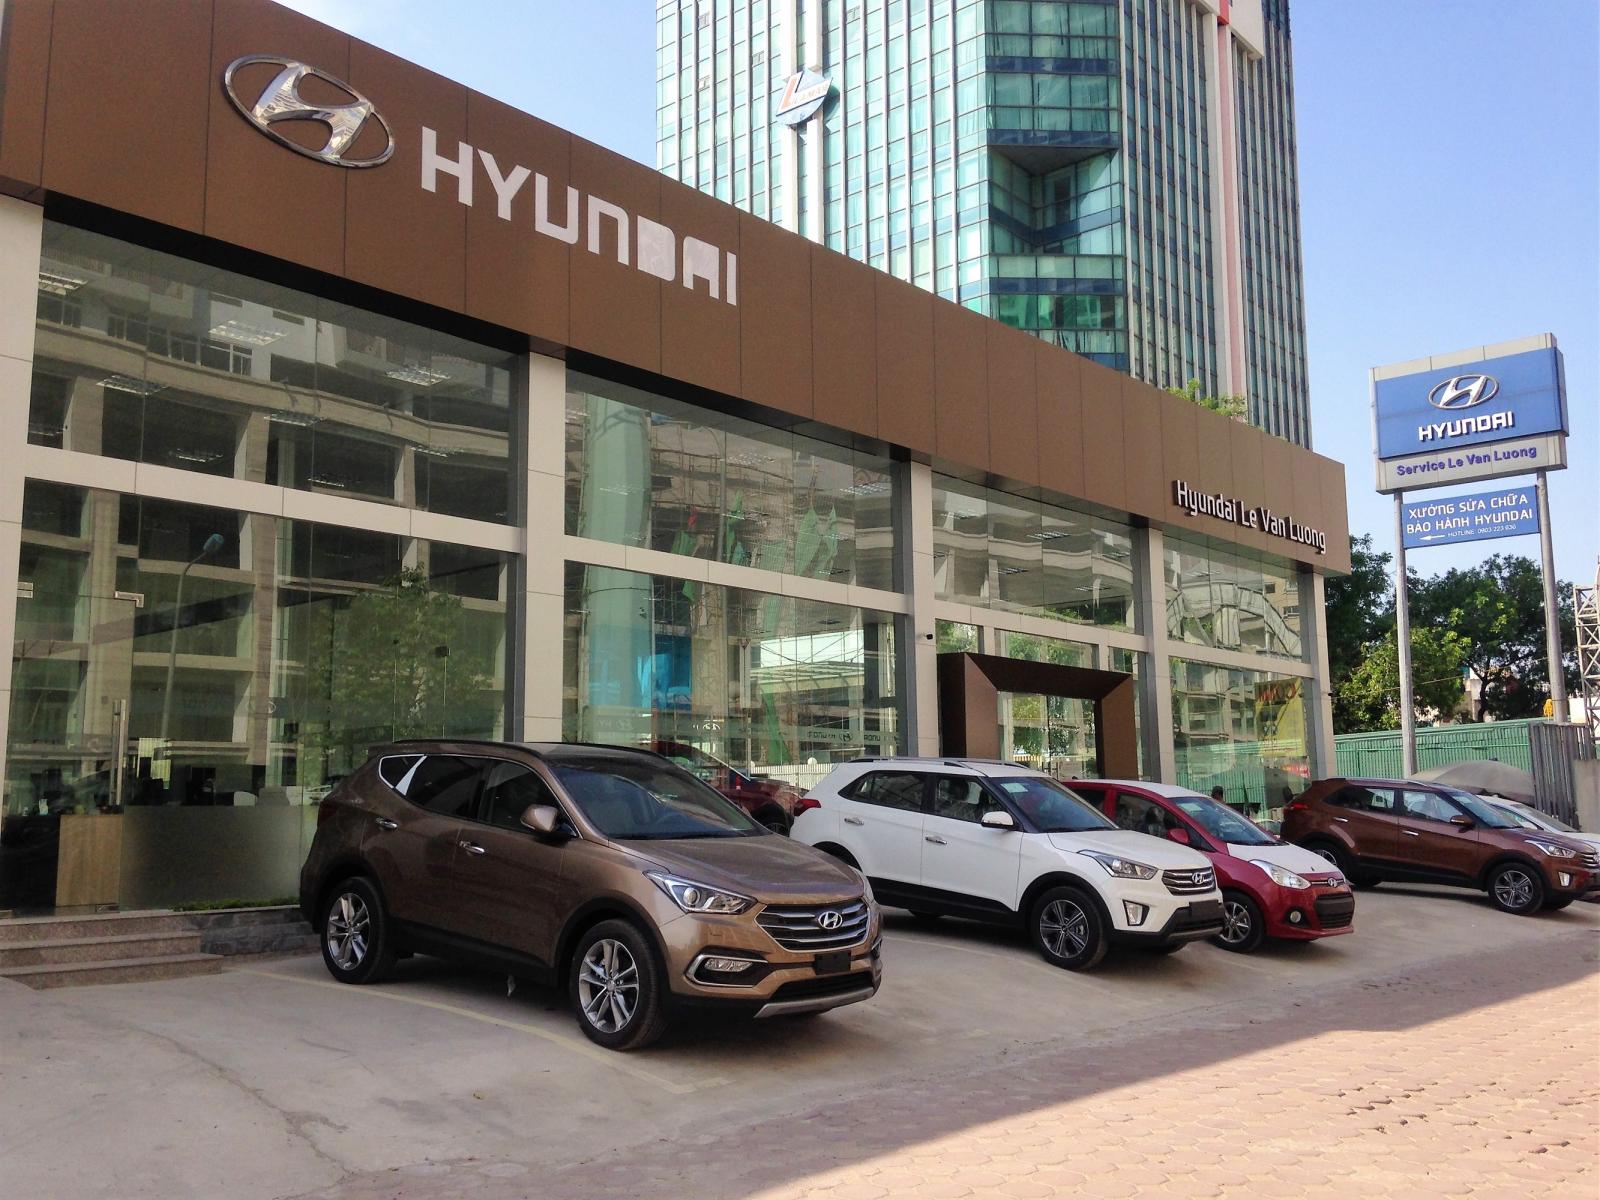 Hyundai Lê Văn Lương 86 Khuất Duy Tiến vẫn tiếp tục hoạt động công khai a1